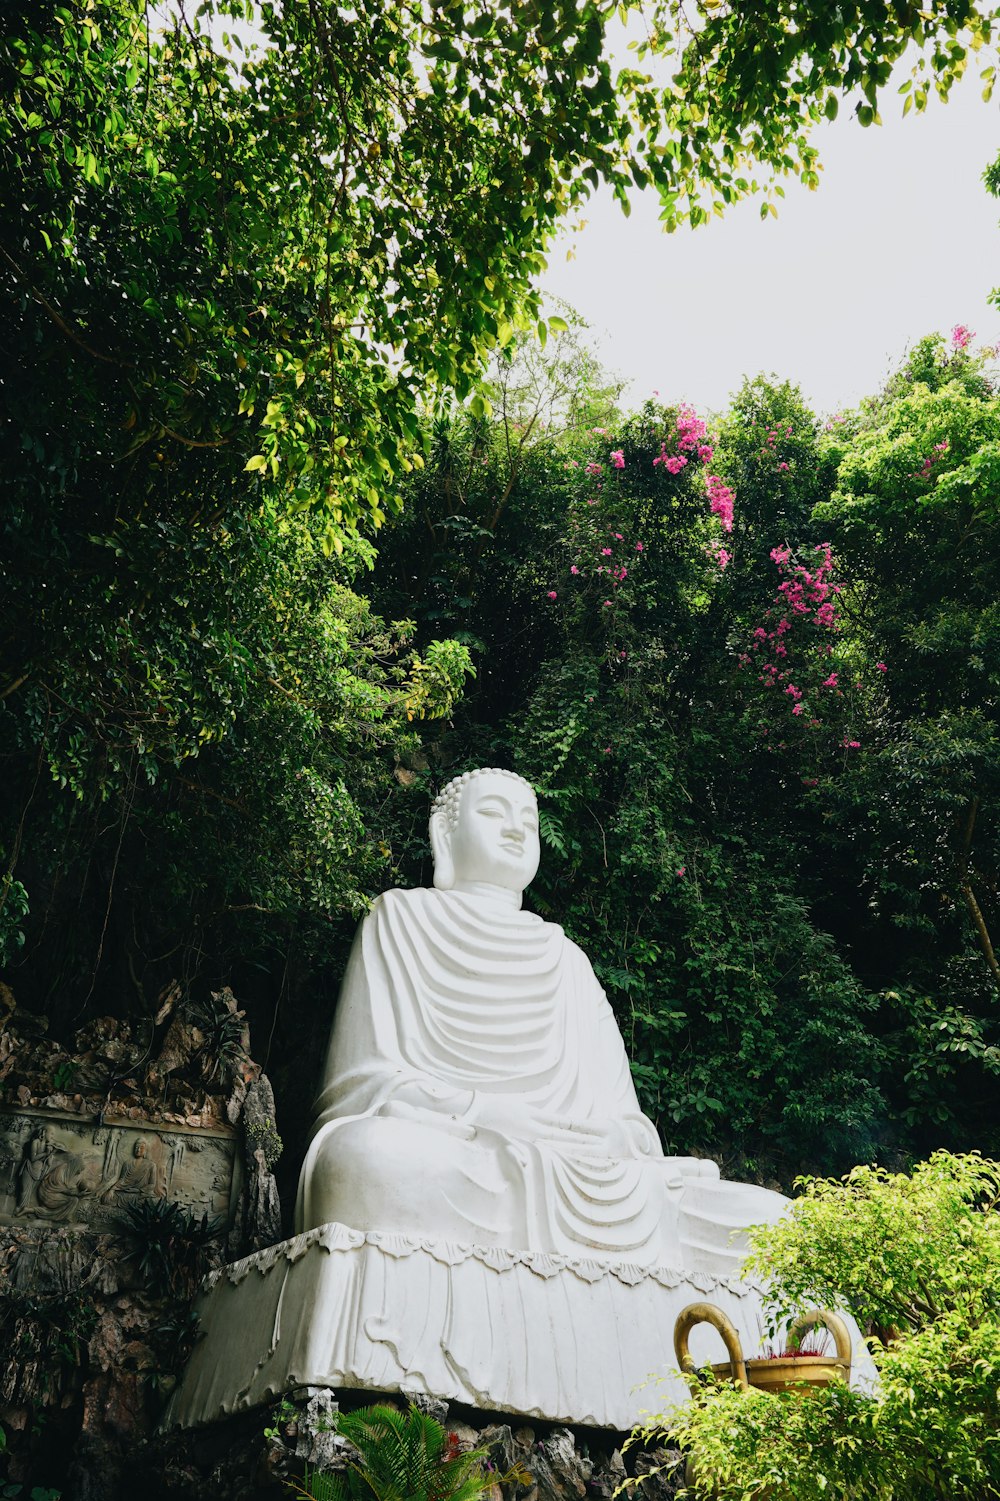 uma estátua de uma pessoa sentada em um banco em um jardim